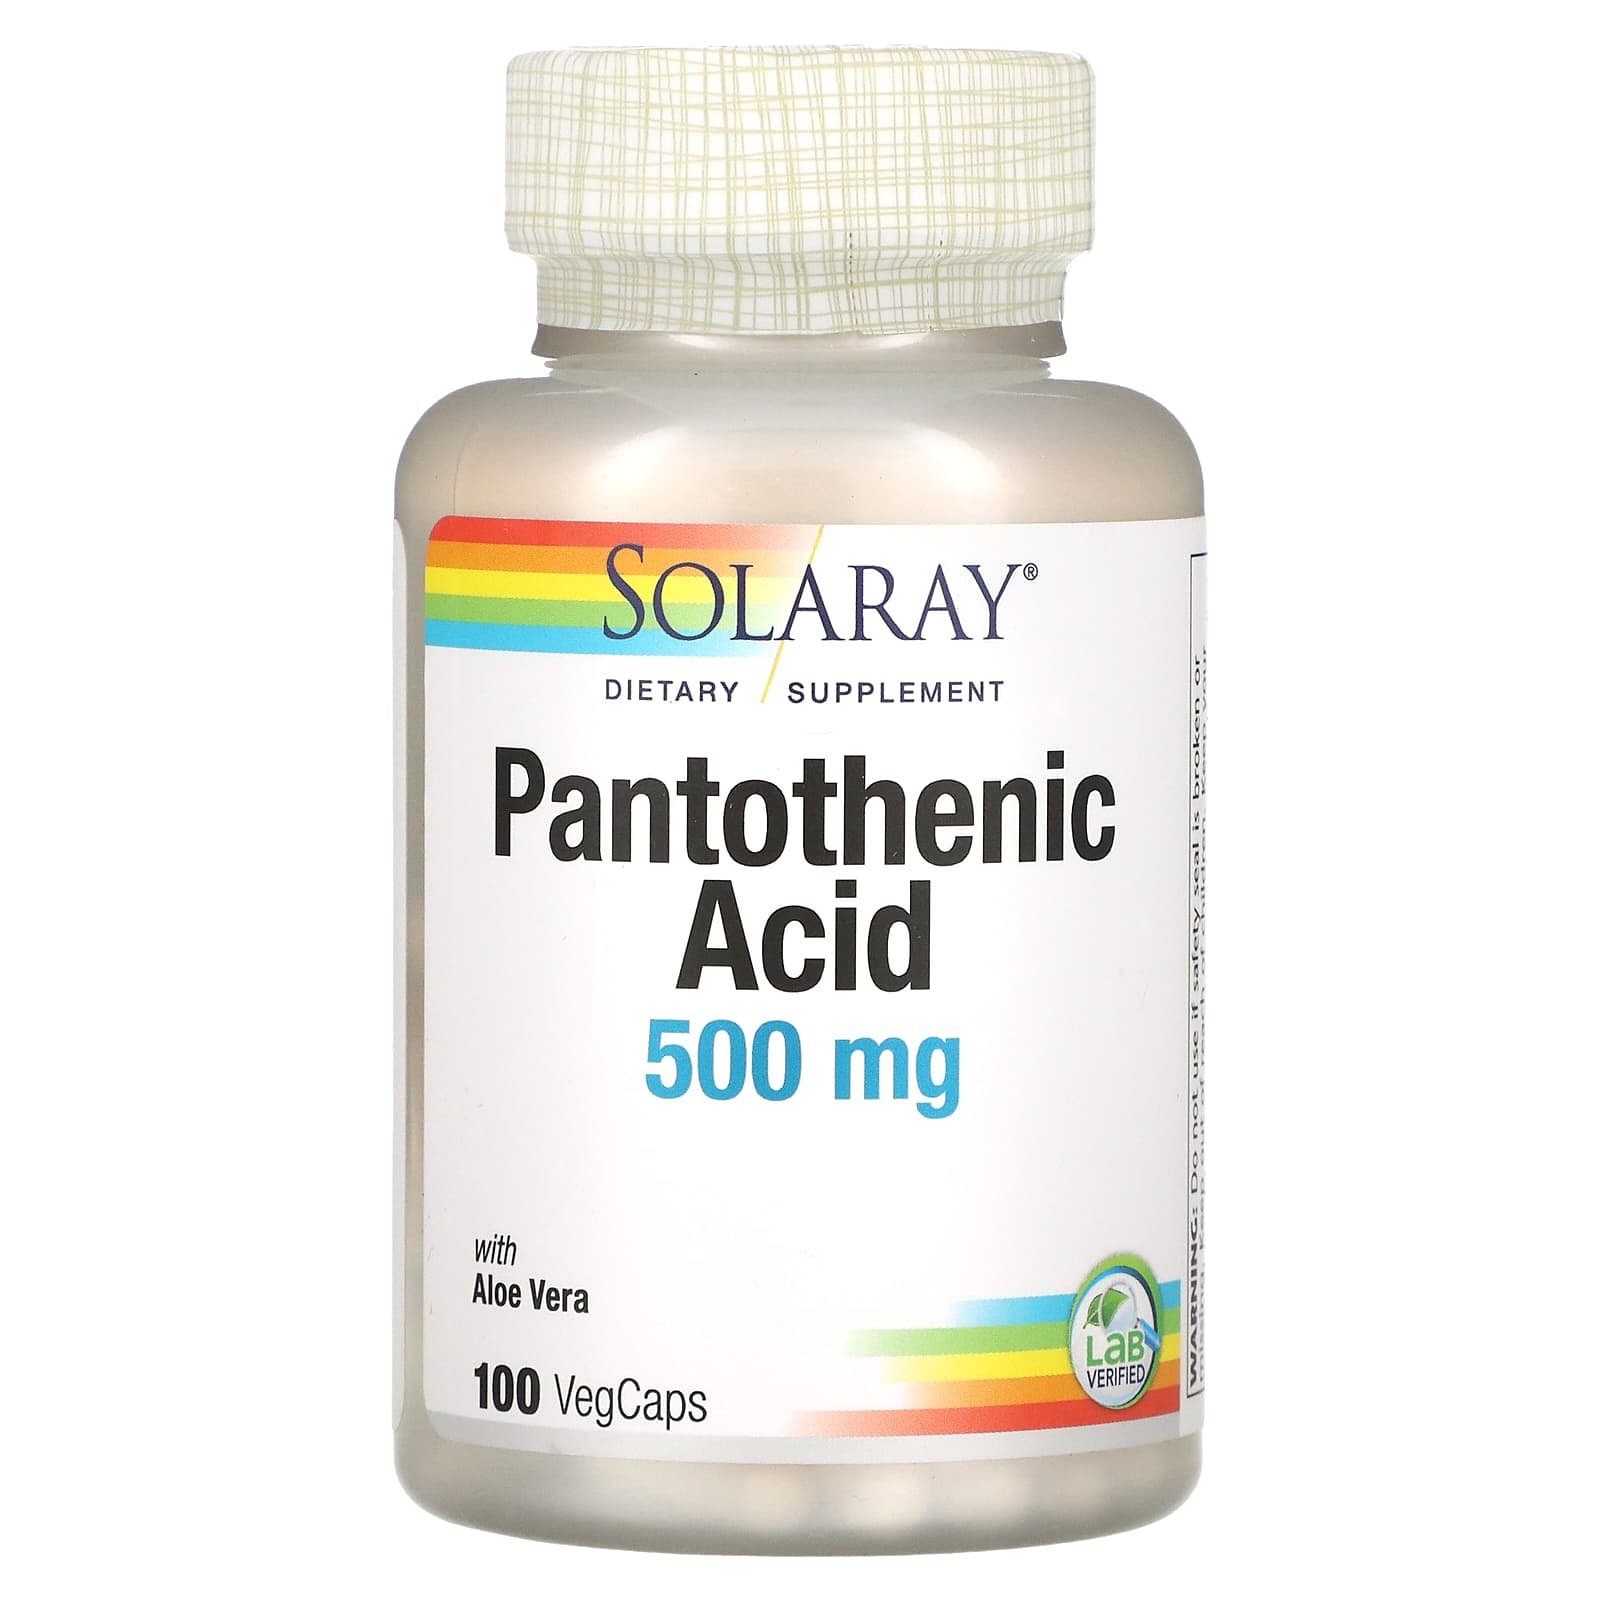 Pantothenic Acid B5 500mg